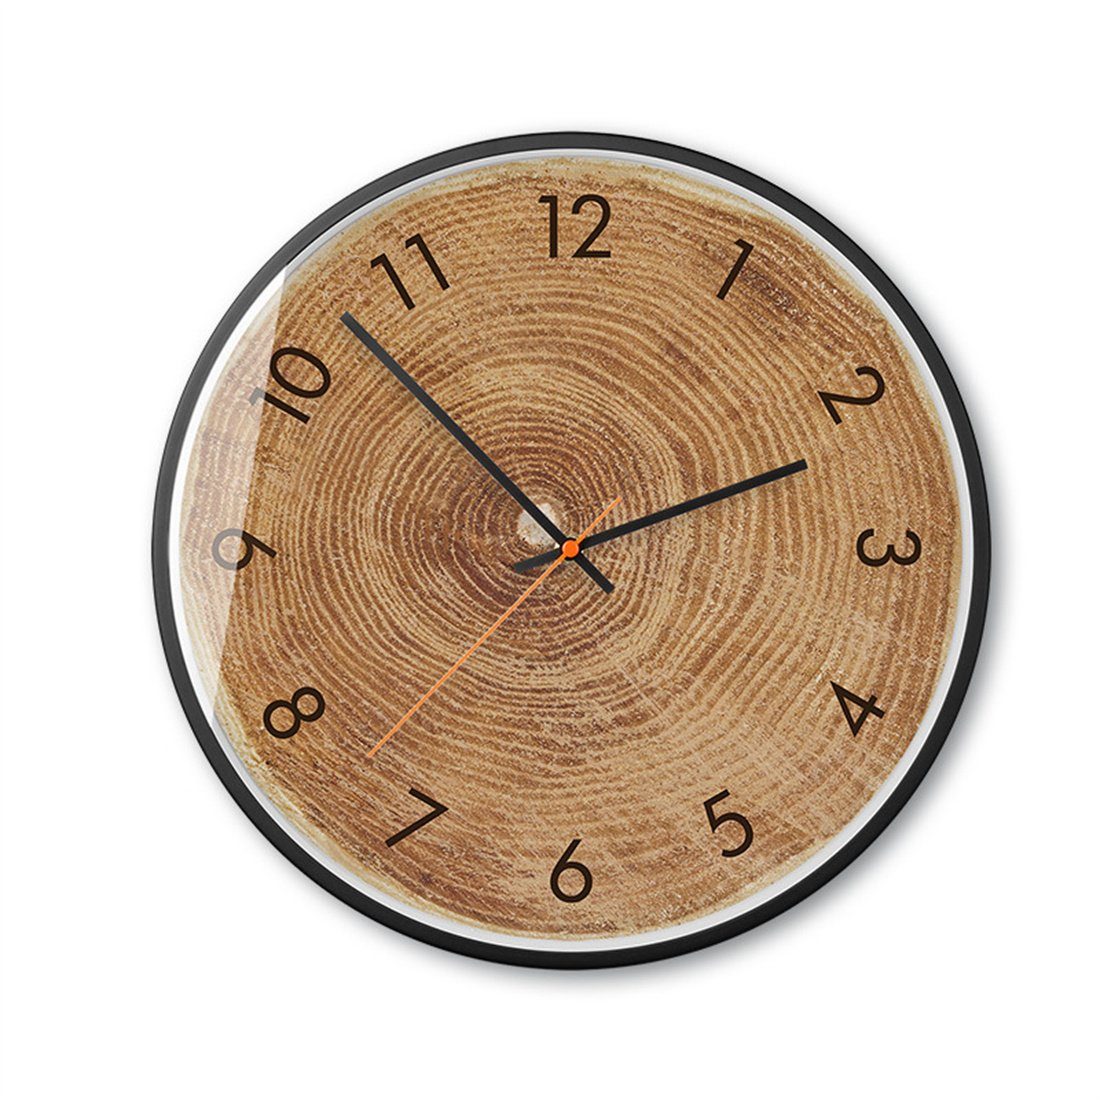 Wanduhr 35cm Holzmaserung Wanduhr, Wohnzimmer dekorative Uhr B für stille HOPPO~